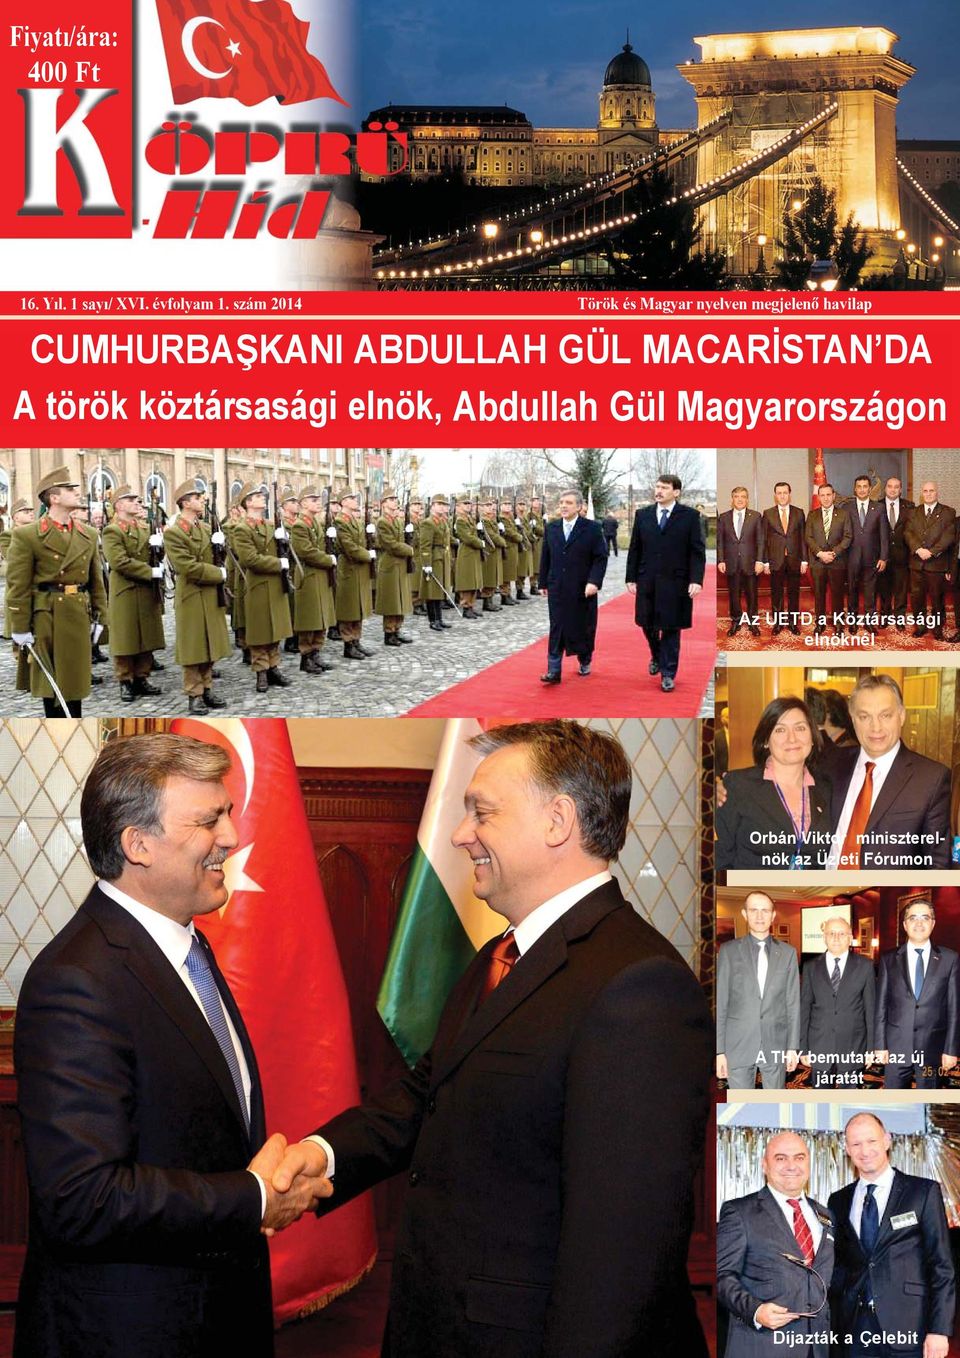 MACARİSTAN DA A török köztársasági elnök, Abdullah Gül Magyarországon Az UETD a